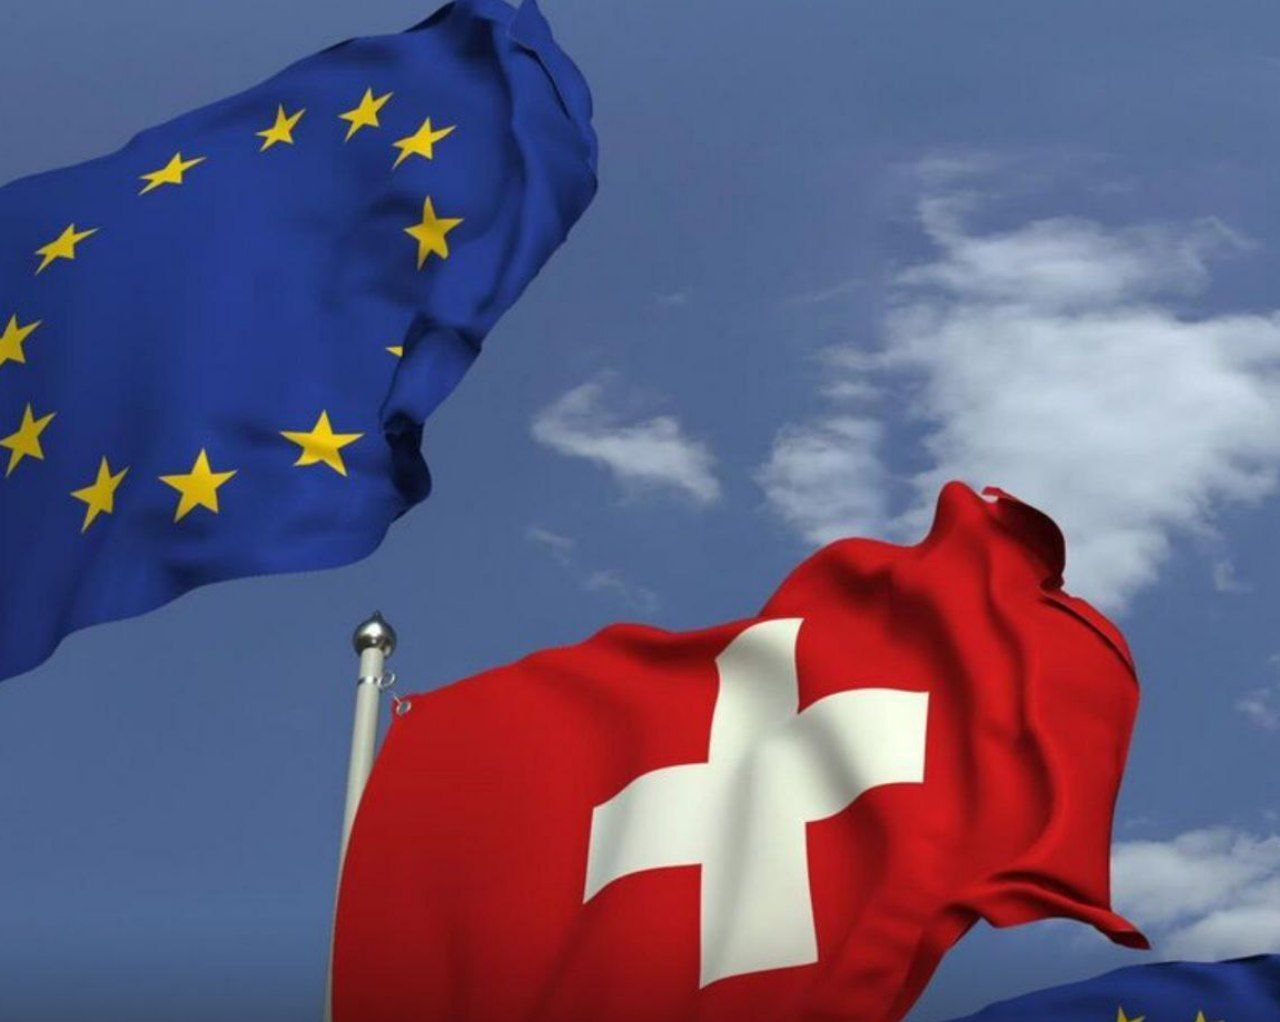 سوئیس هشتمین بسته تحریمی اتحادیه اروپا علیه روسیه را تصویب کرد